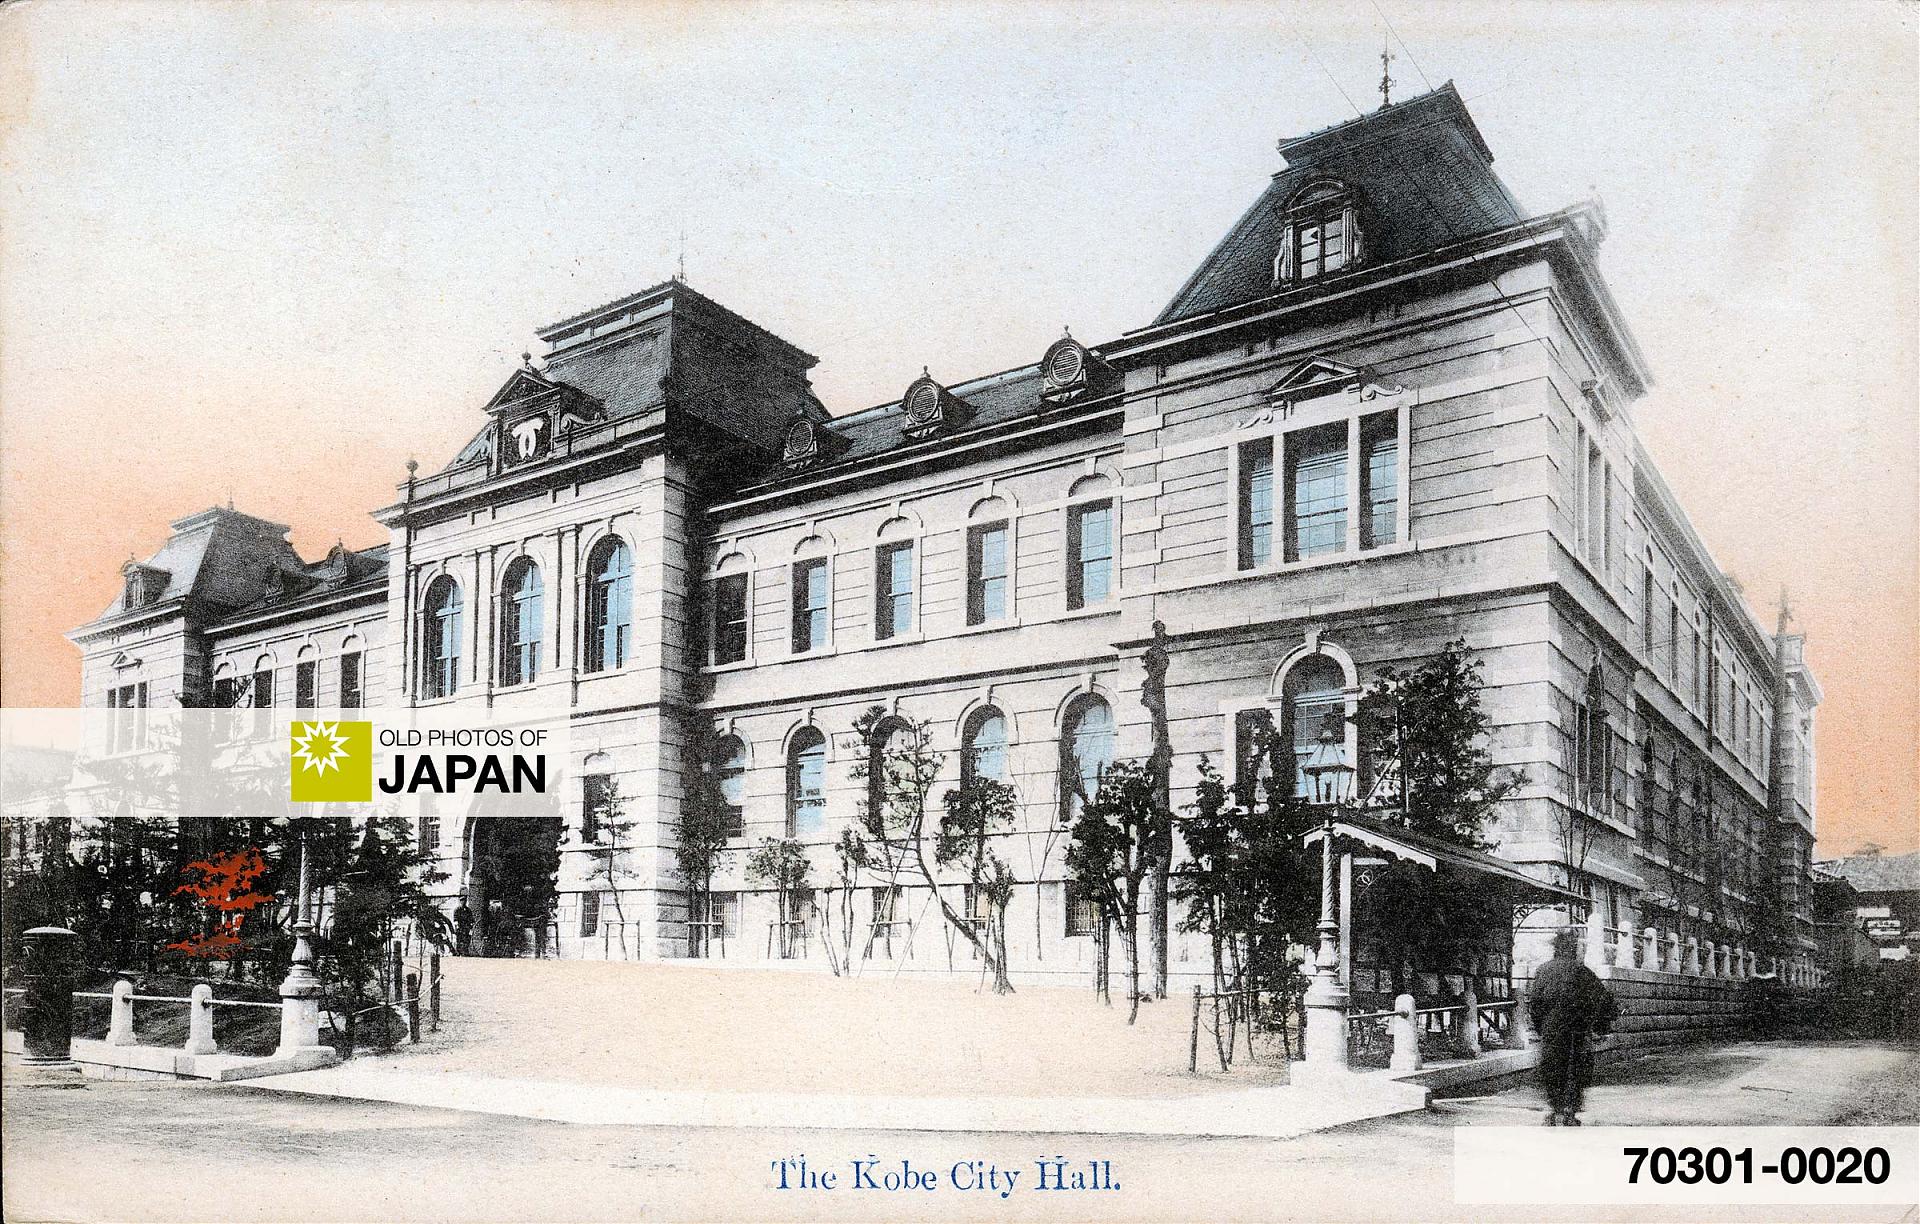 70301-0020 - Kobe City Hall